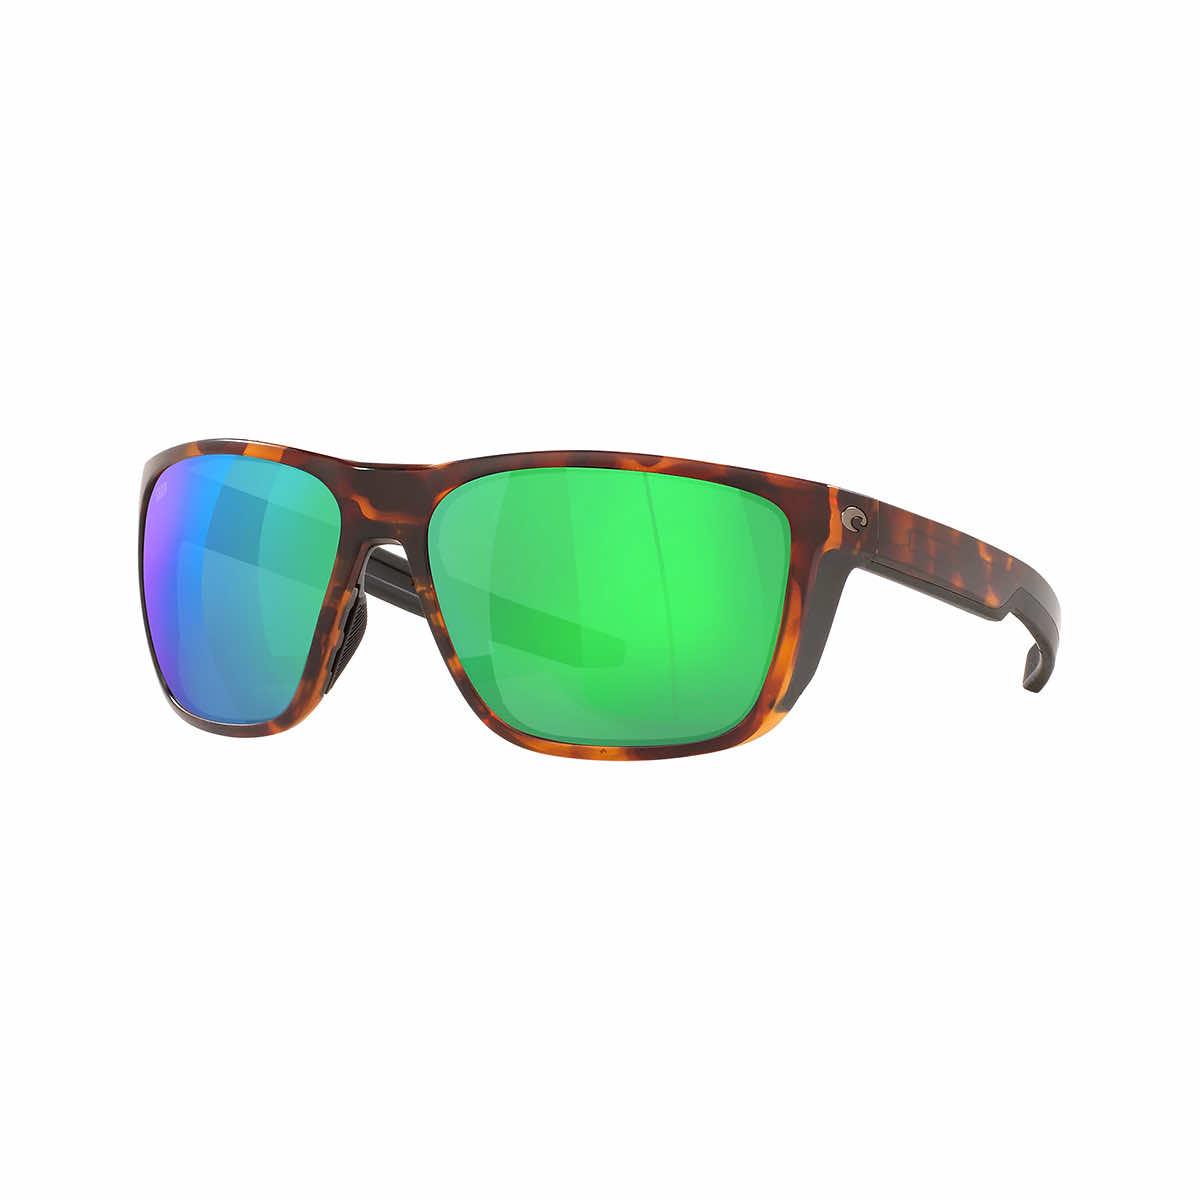  Ferg 580p Sunglasses - Polarized Plastic